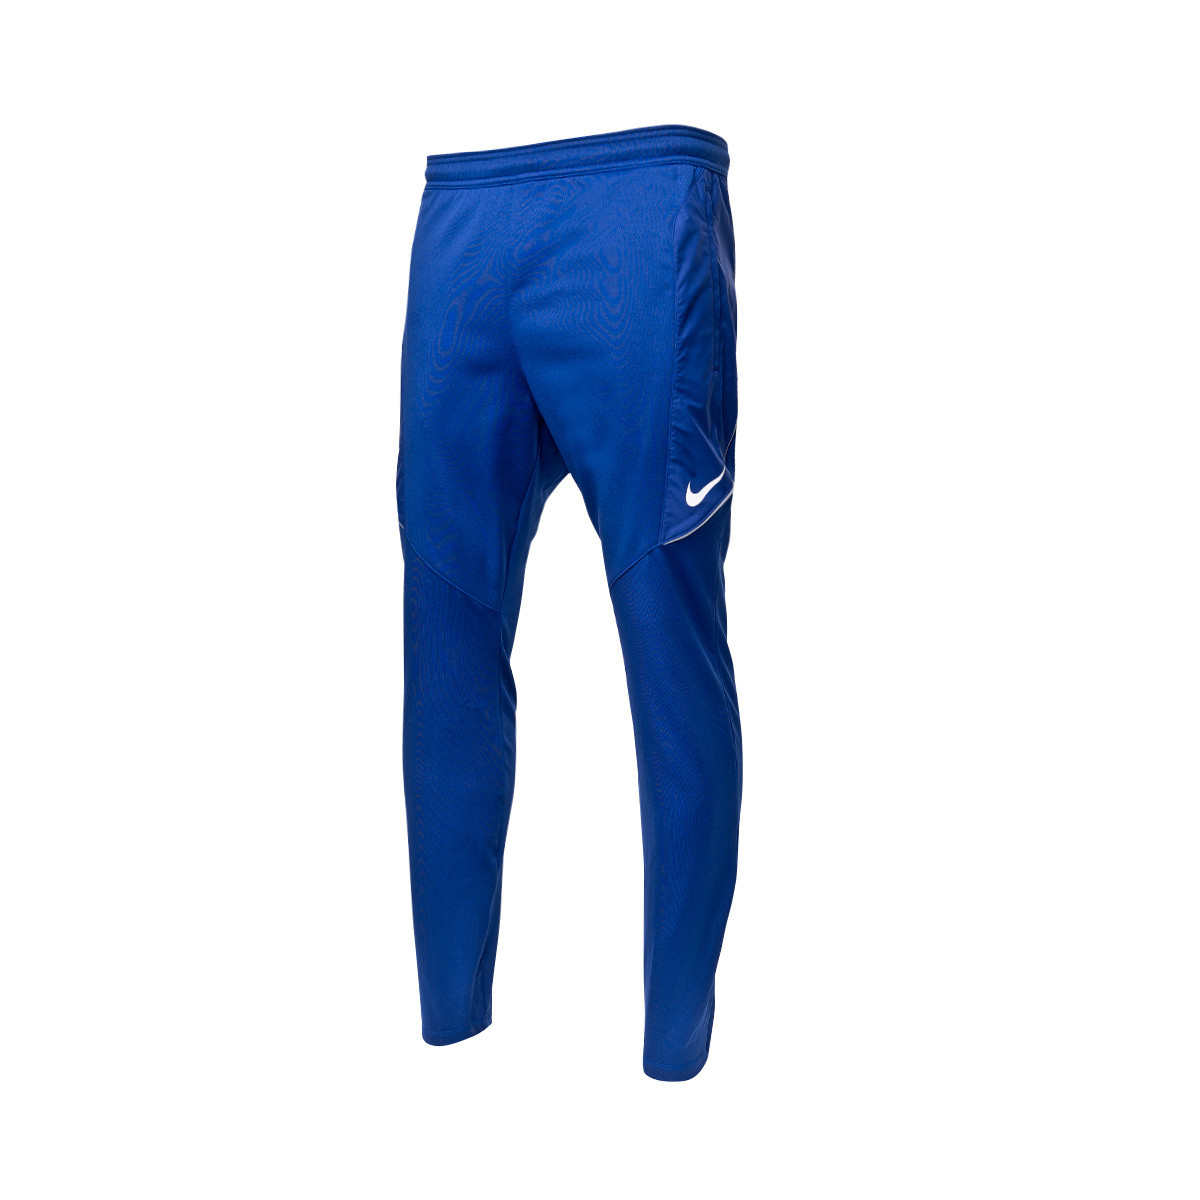 Long pants Nike Dri-Fit Strike KWPZ 